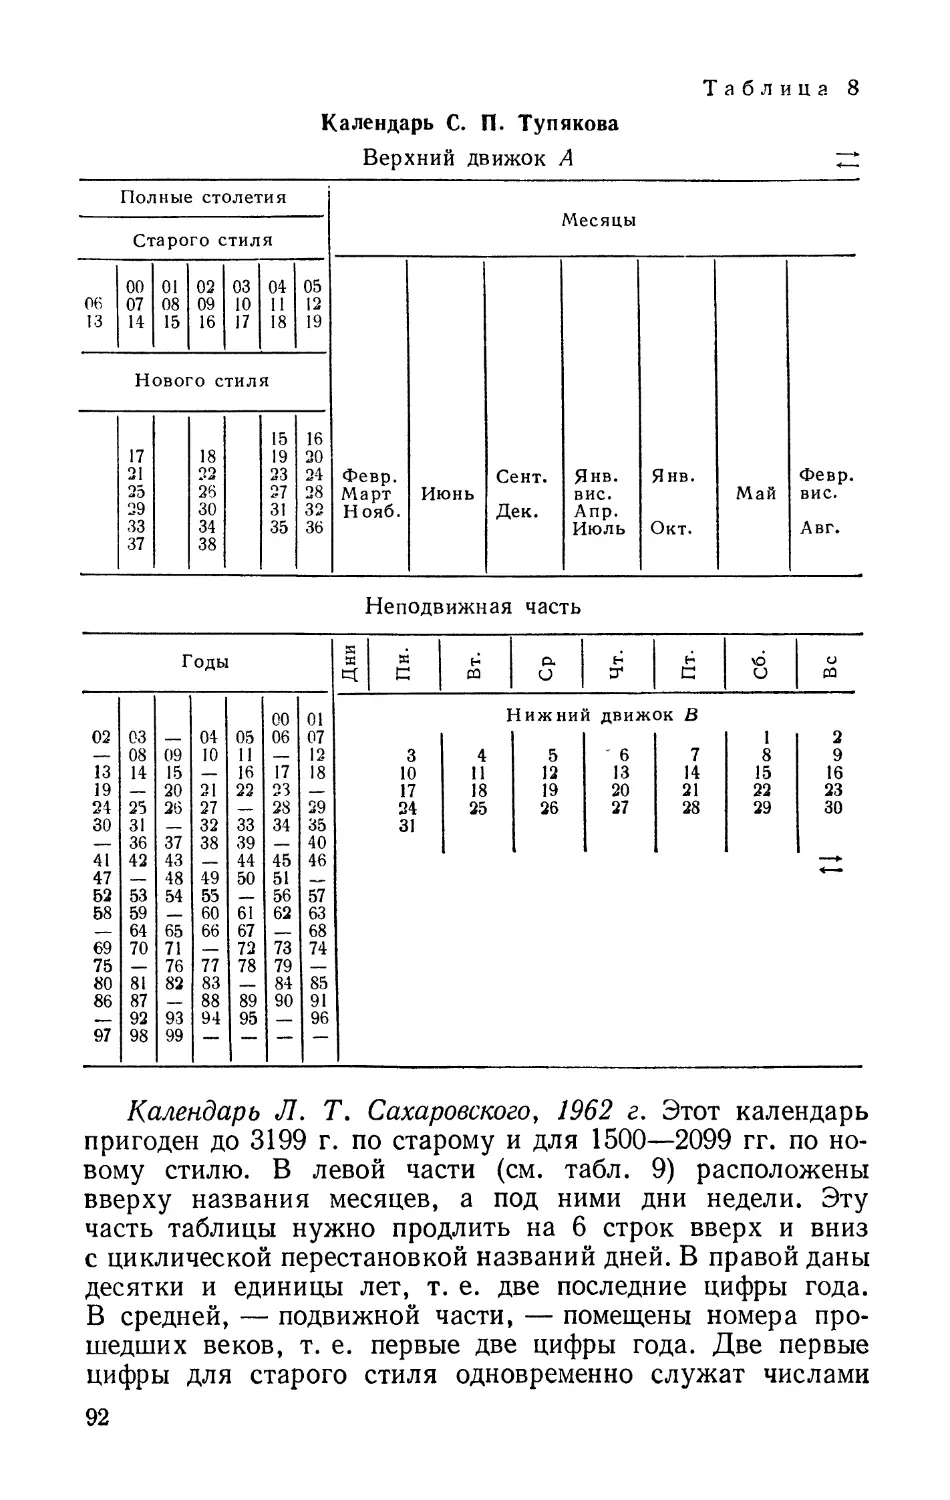 Календарь Л. Т. Сахаровского, 1962 г.